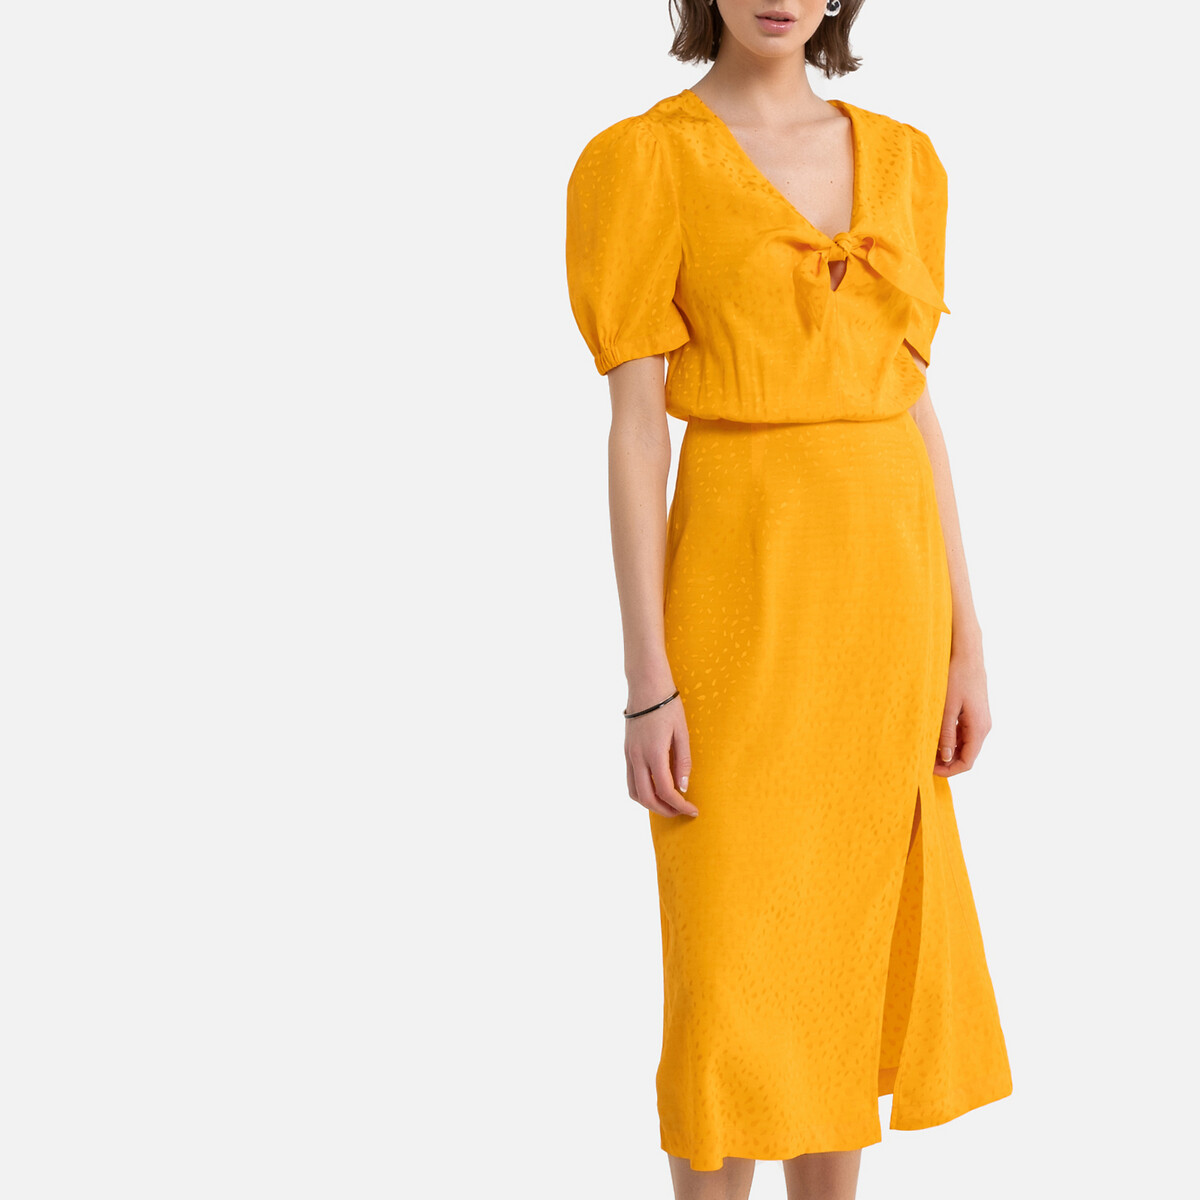 Платье La Redoute Длинное для торжества из сатиновой жаккардовой ткани 40 (FR) - 46 (RUS) желтый, размер 40 (FR) - 46 (RUS) Длинное для торжества из сатиновой жаккардовой ткани 40 (FR) - 46 (RUS) желтый - фото 2